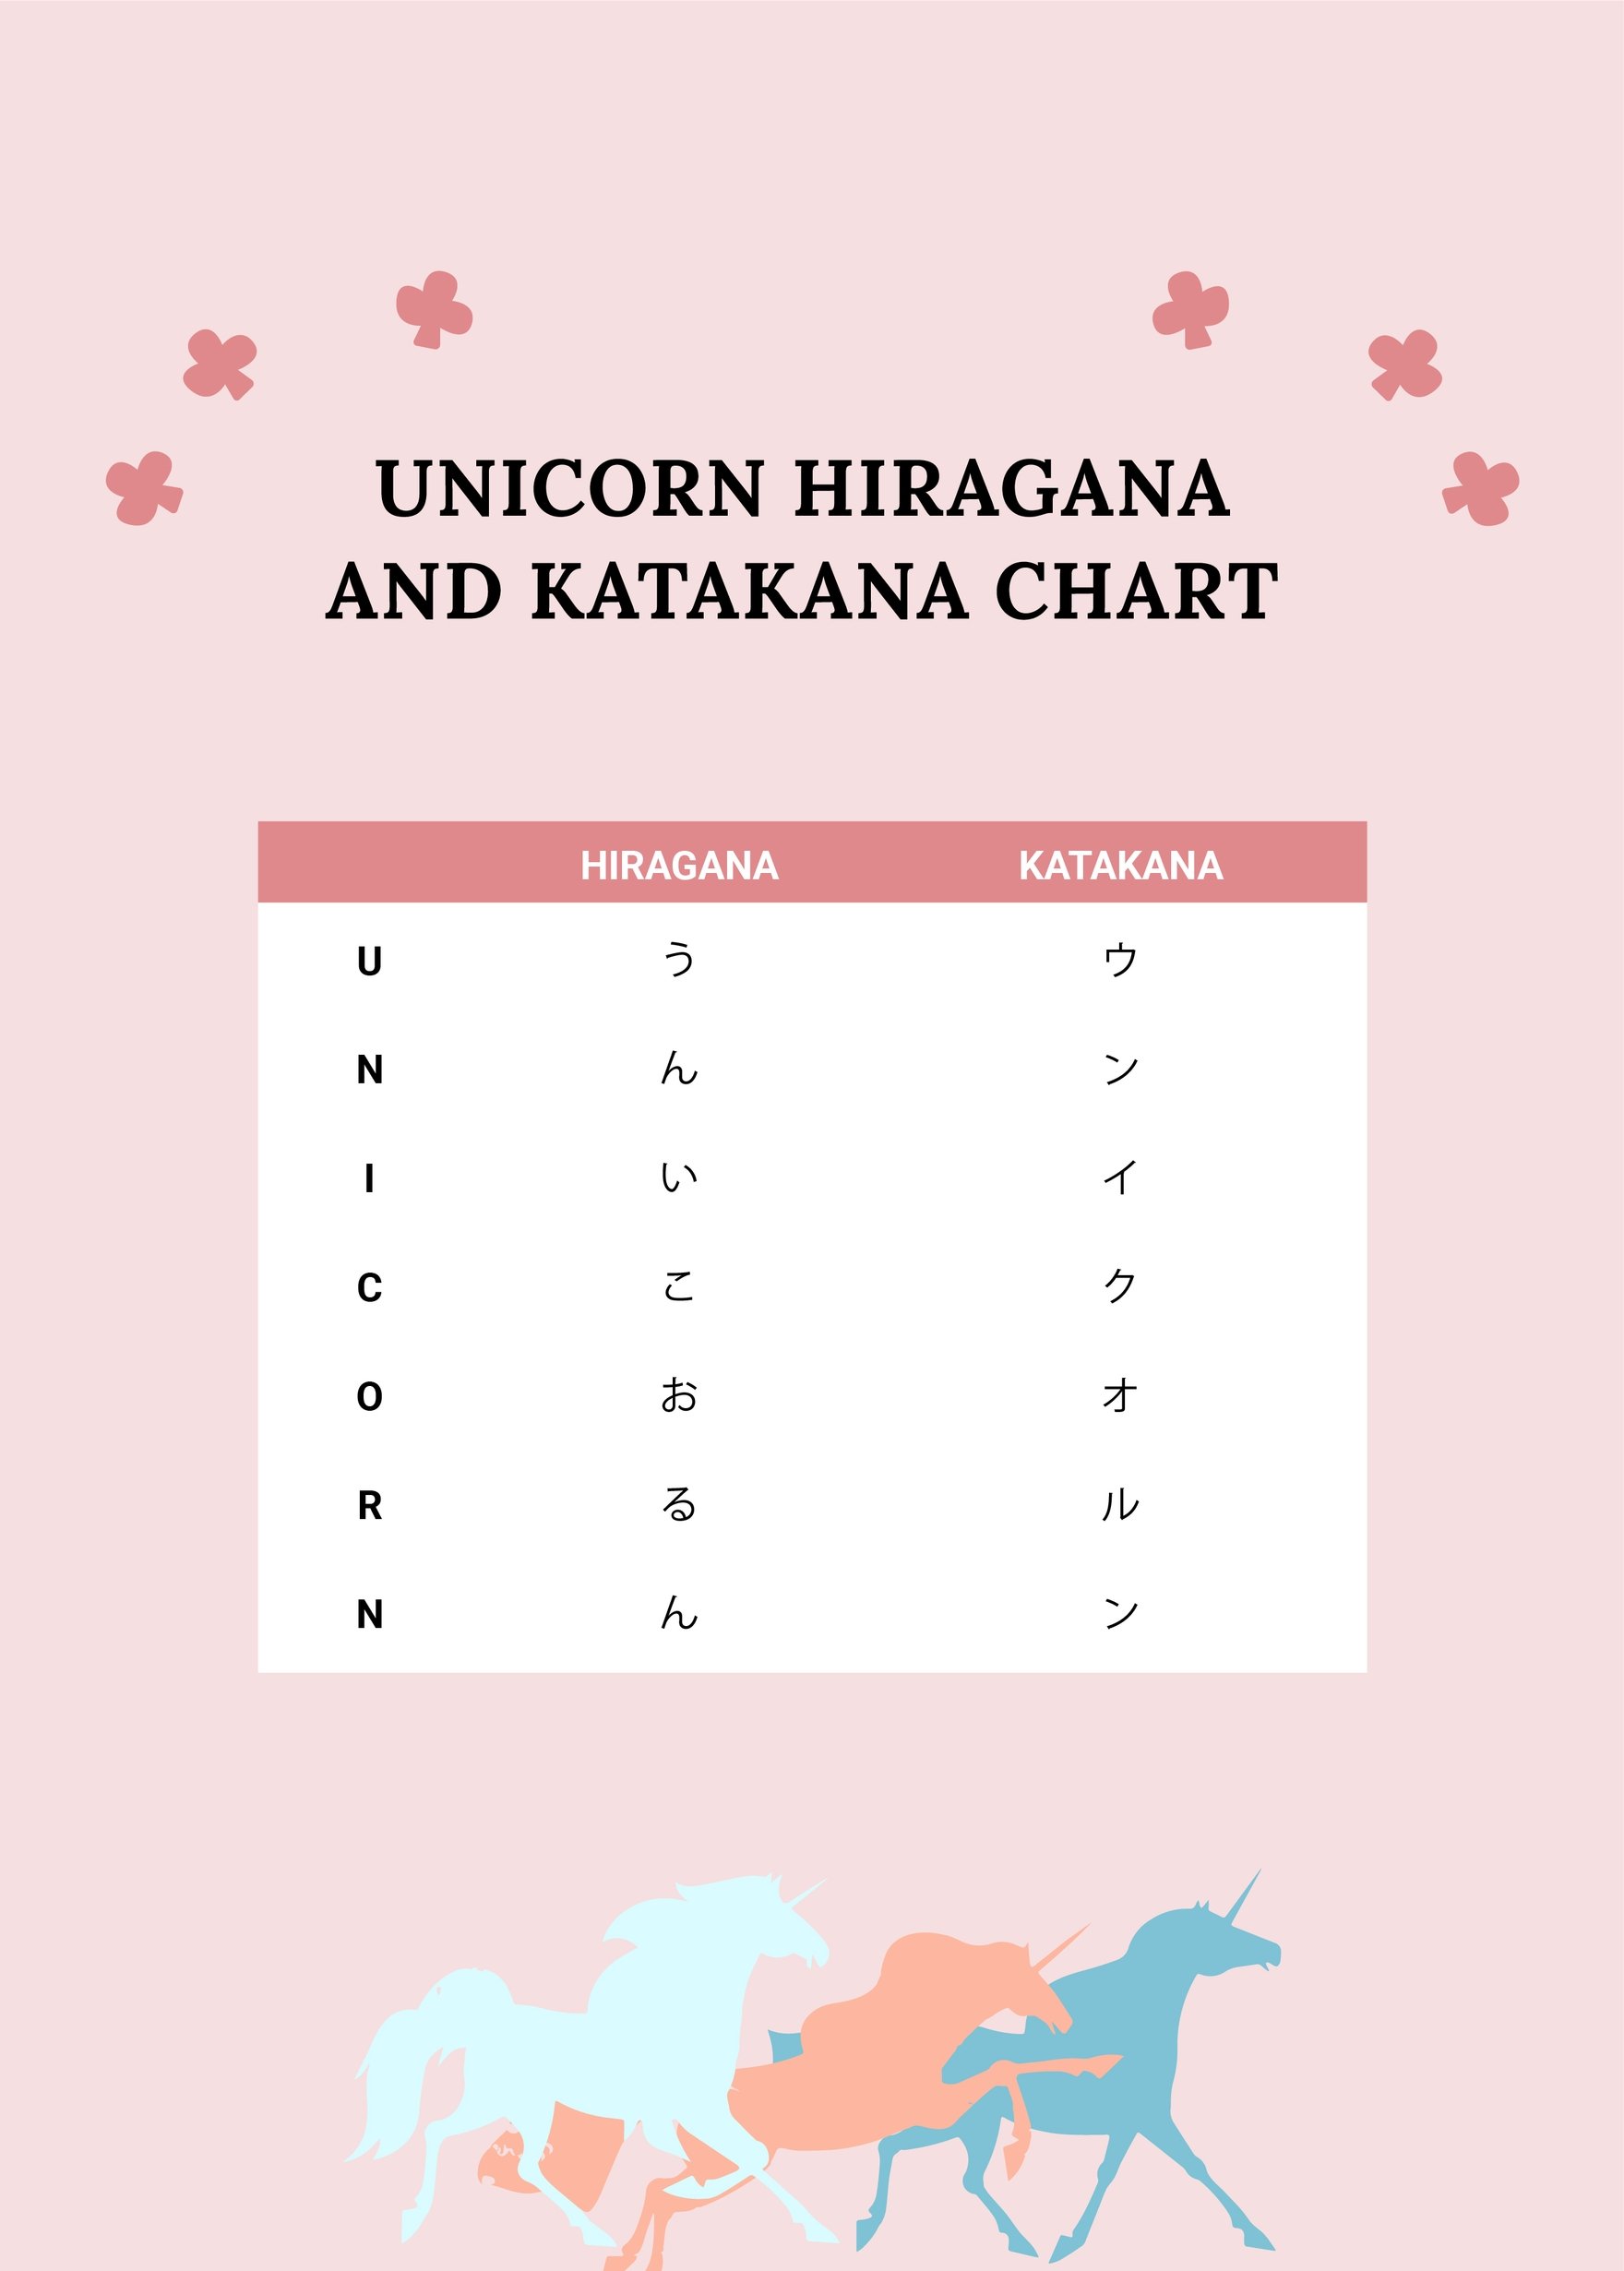 Unicorn Hiragana And Katakana Chart in PDF, Illustrator